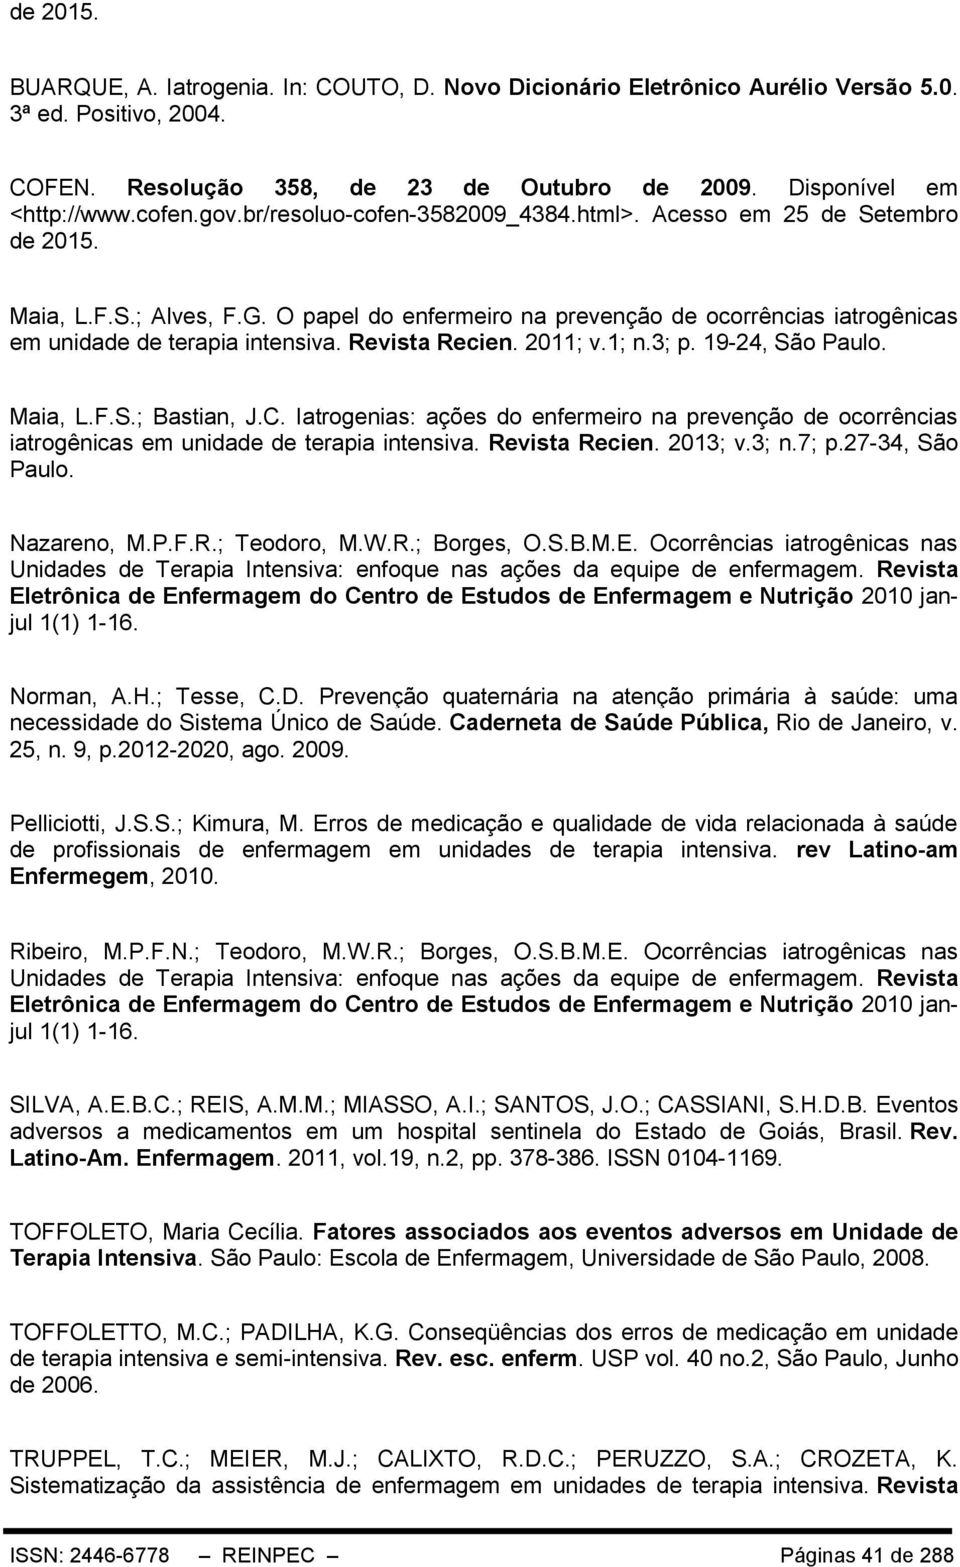 Revista Recien. 2011; v.1; n.3; p. 19-24, São Paulo. Maia, L.F.S.; Bastian, J.C. Iatrogenias: ações do enfermeiro na prevenção de ocorrências iatrogênicas em unidade de terapia intensiva.